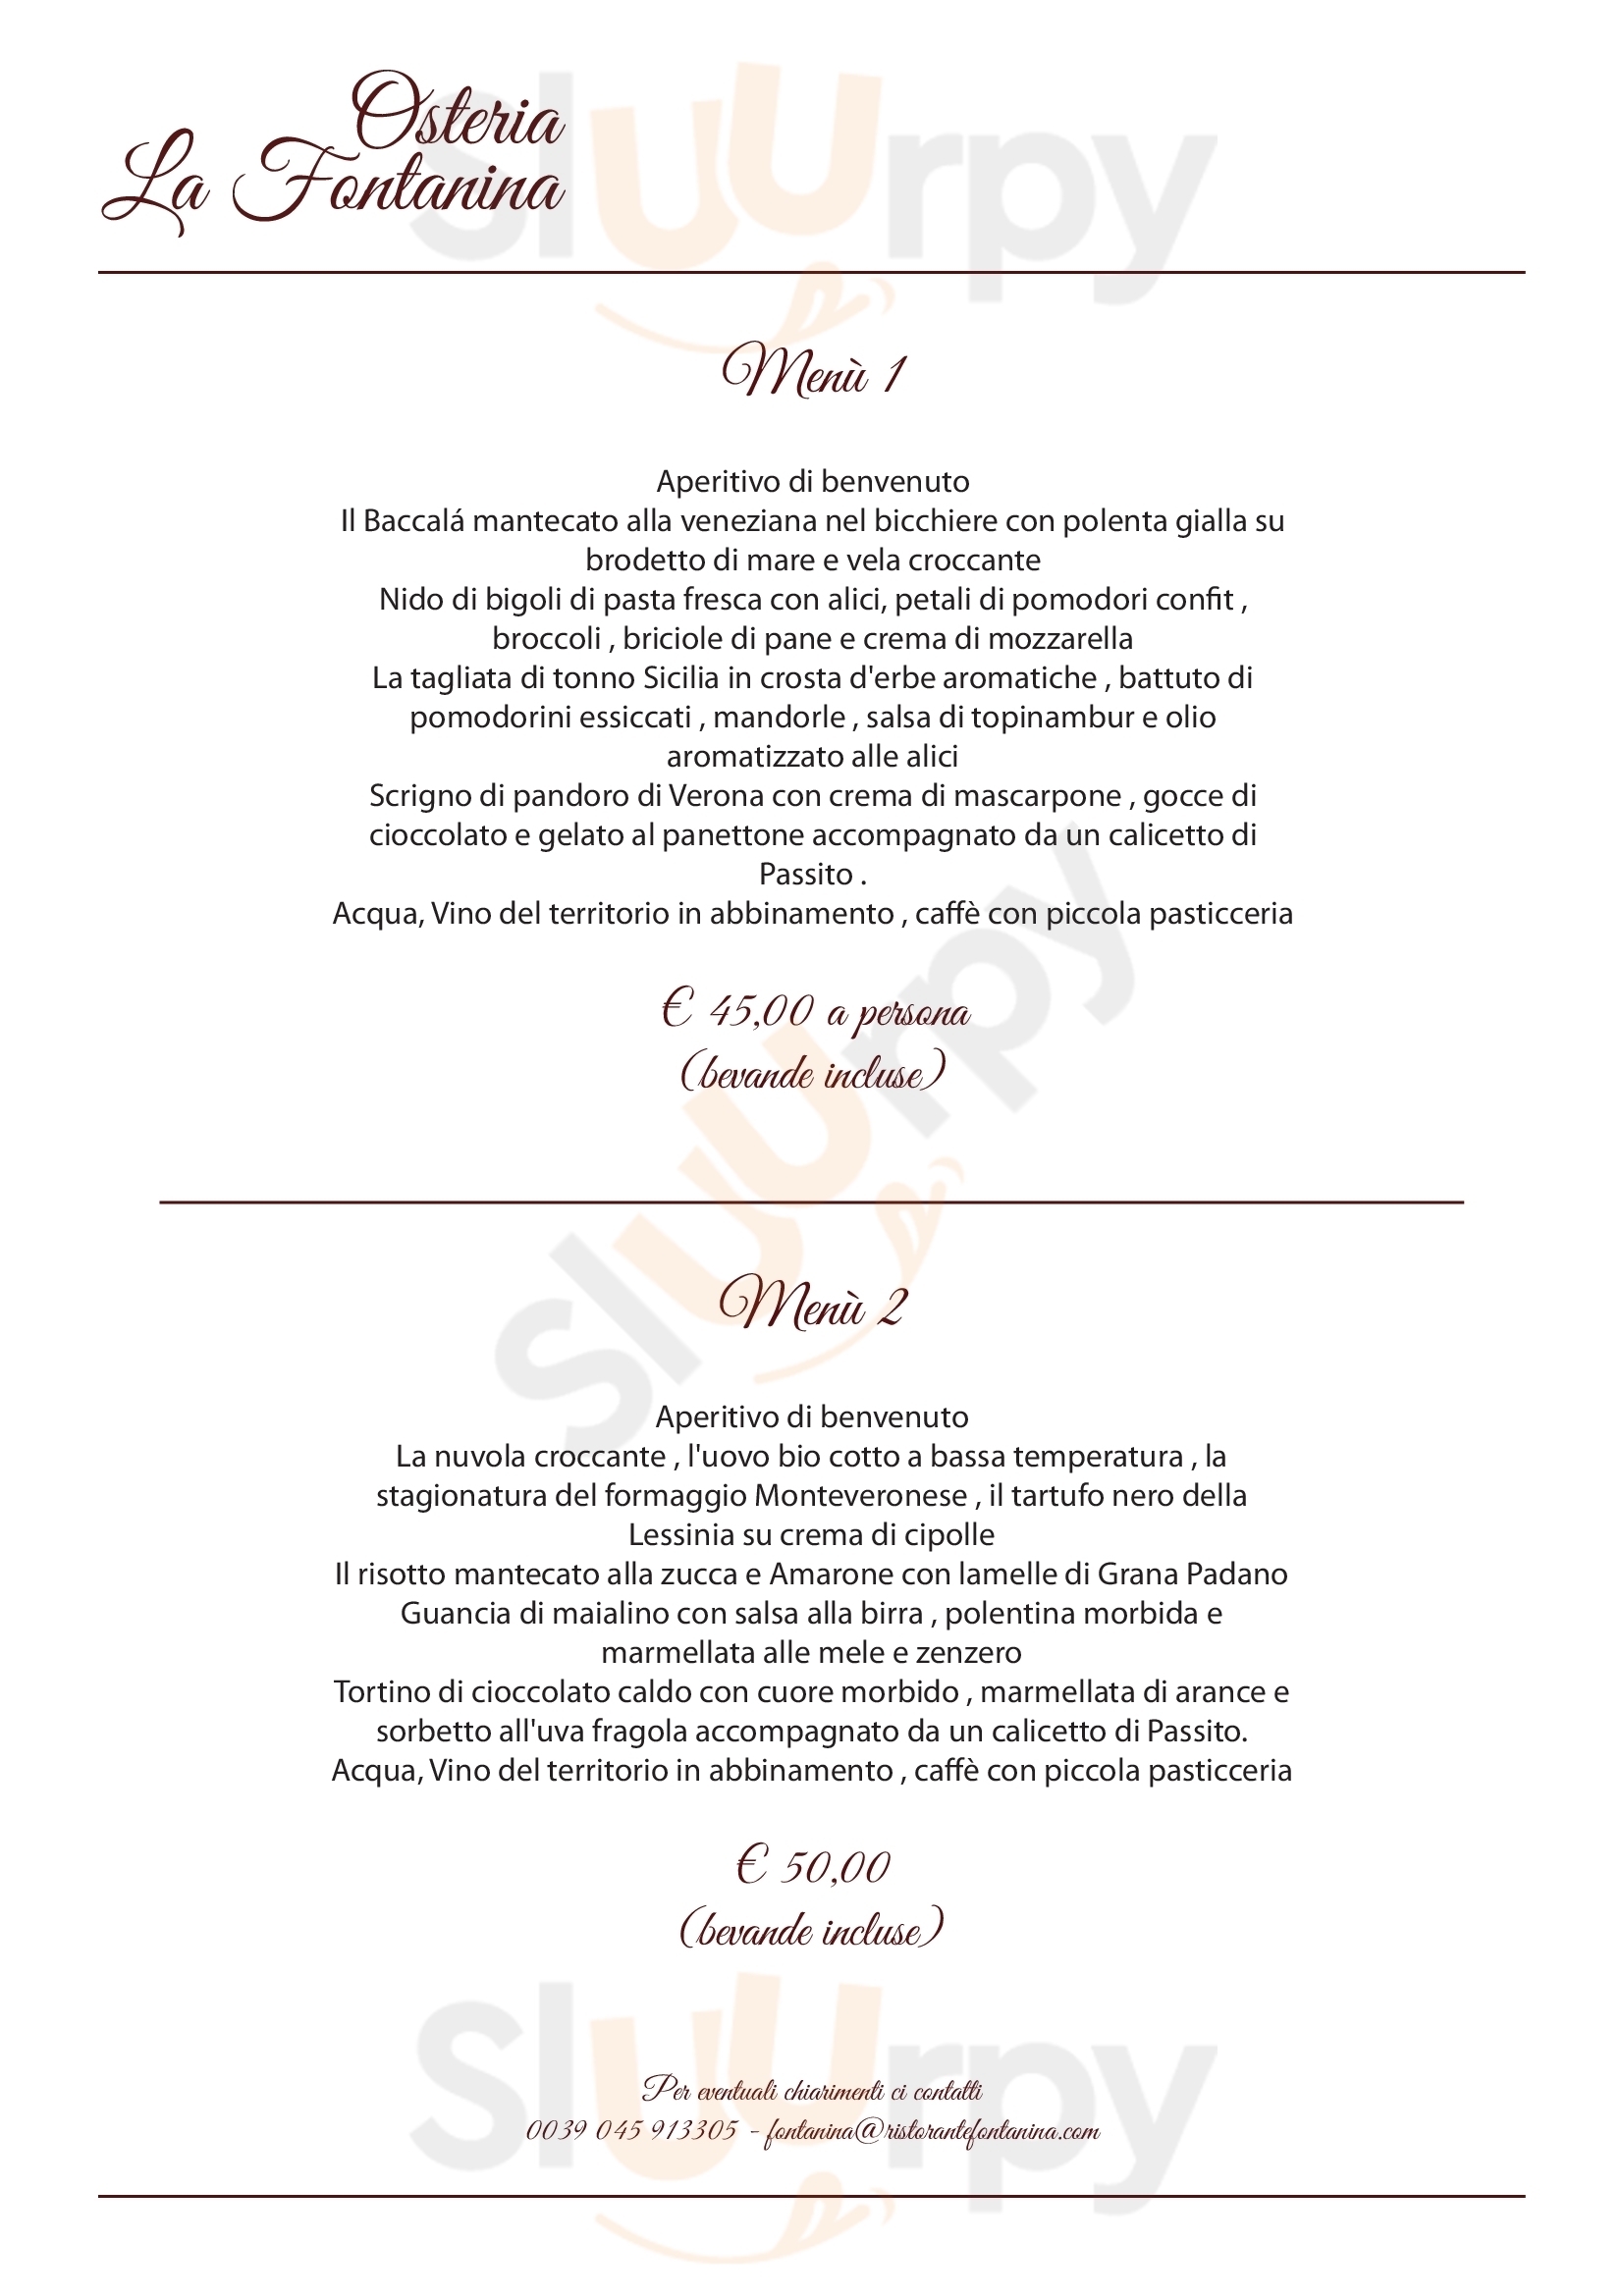 Osteria La Fontanina Verona menù 1 pagina